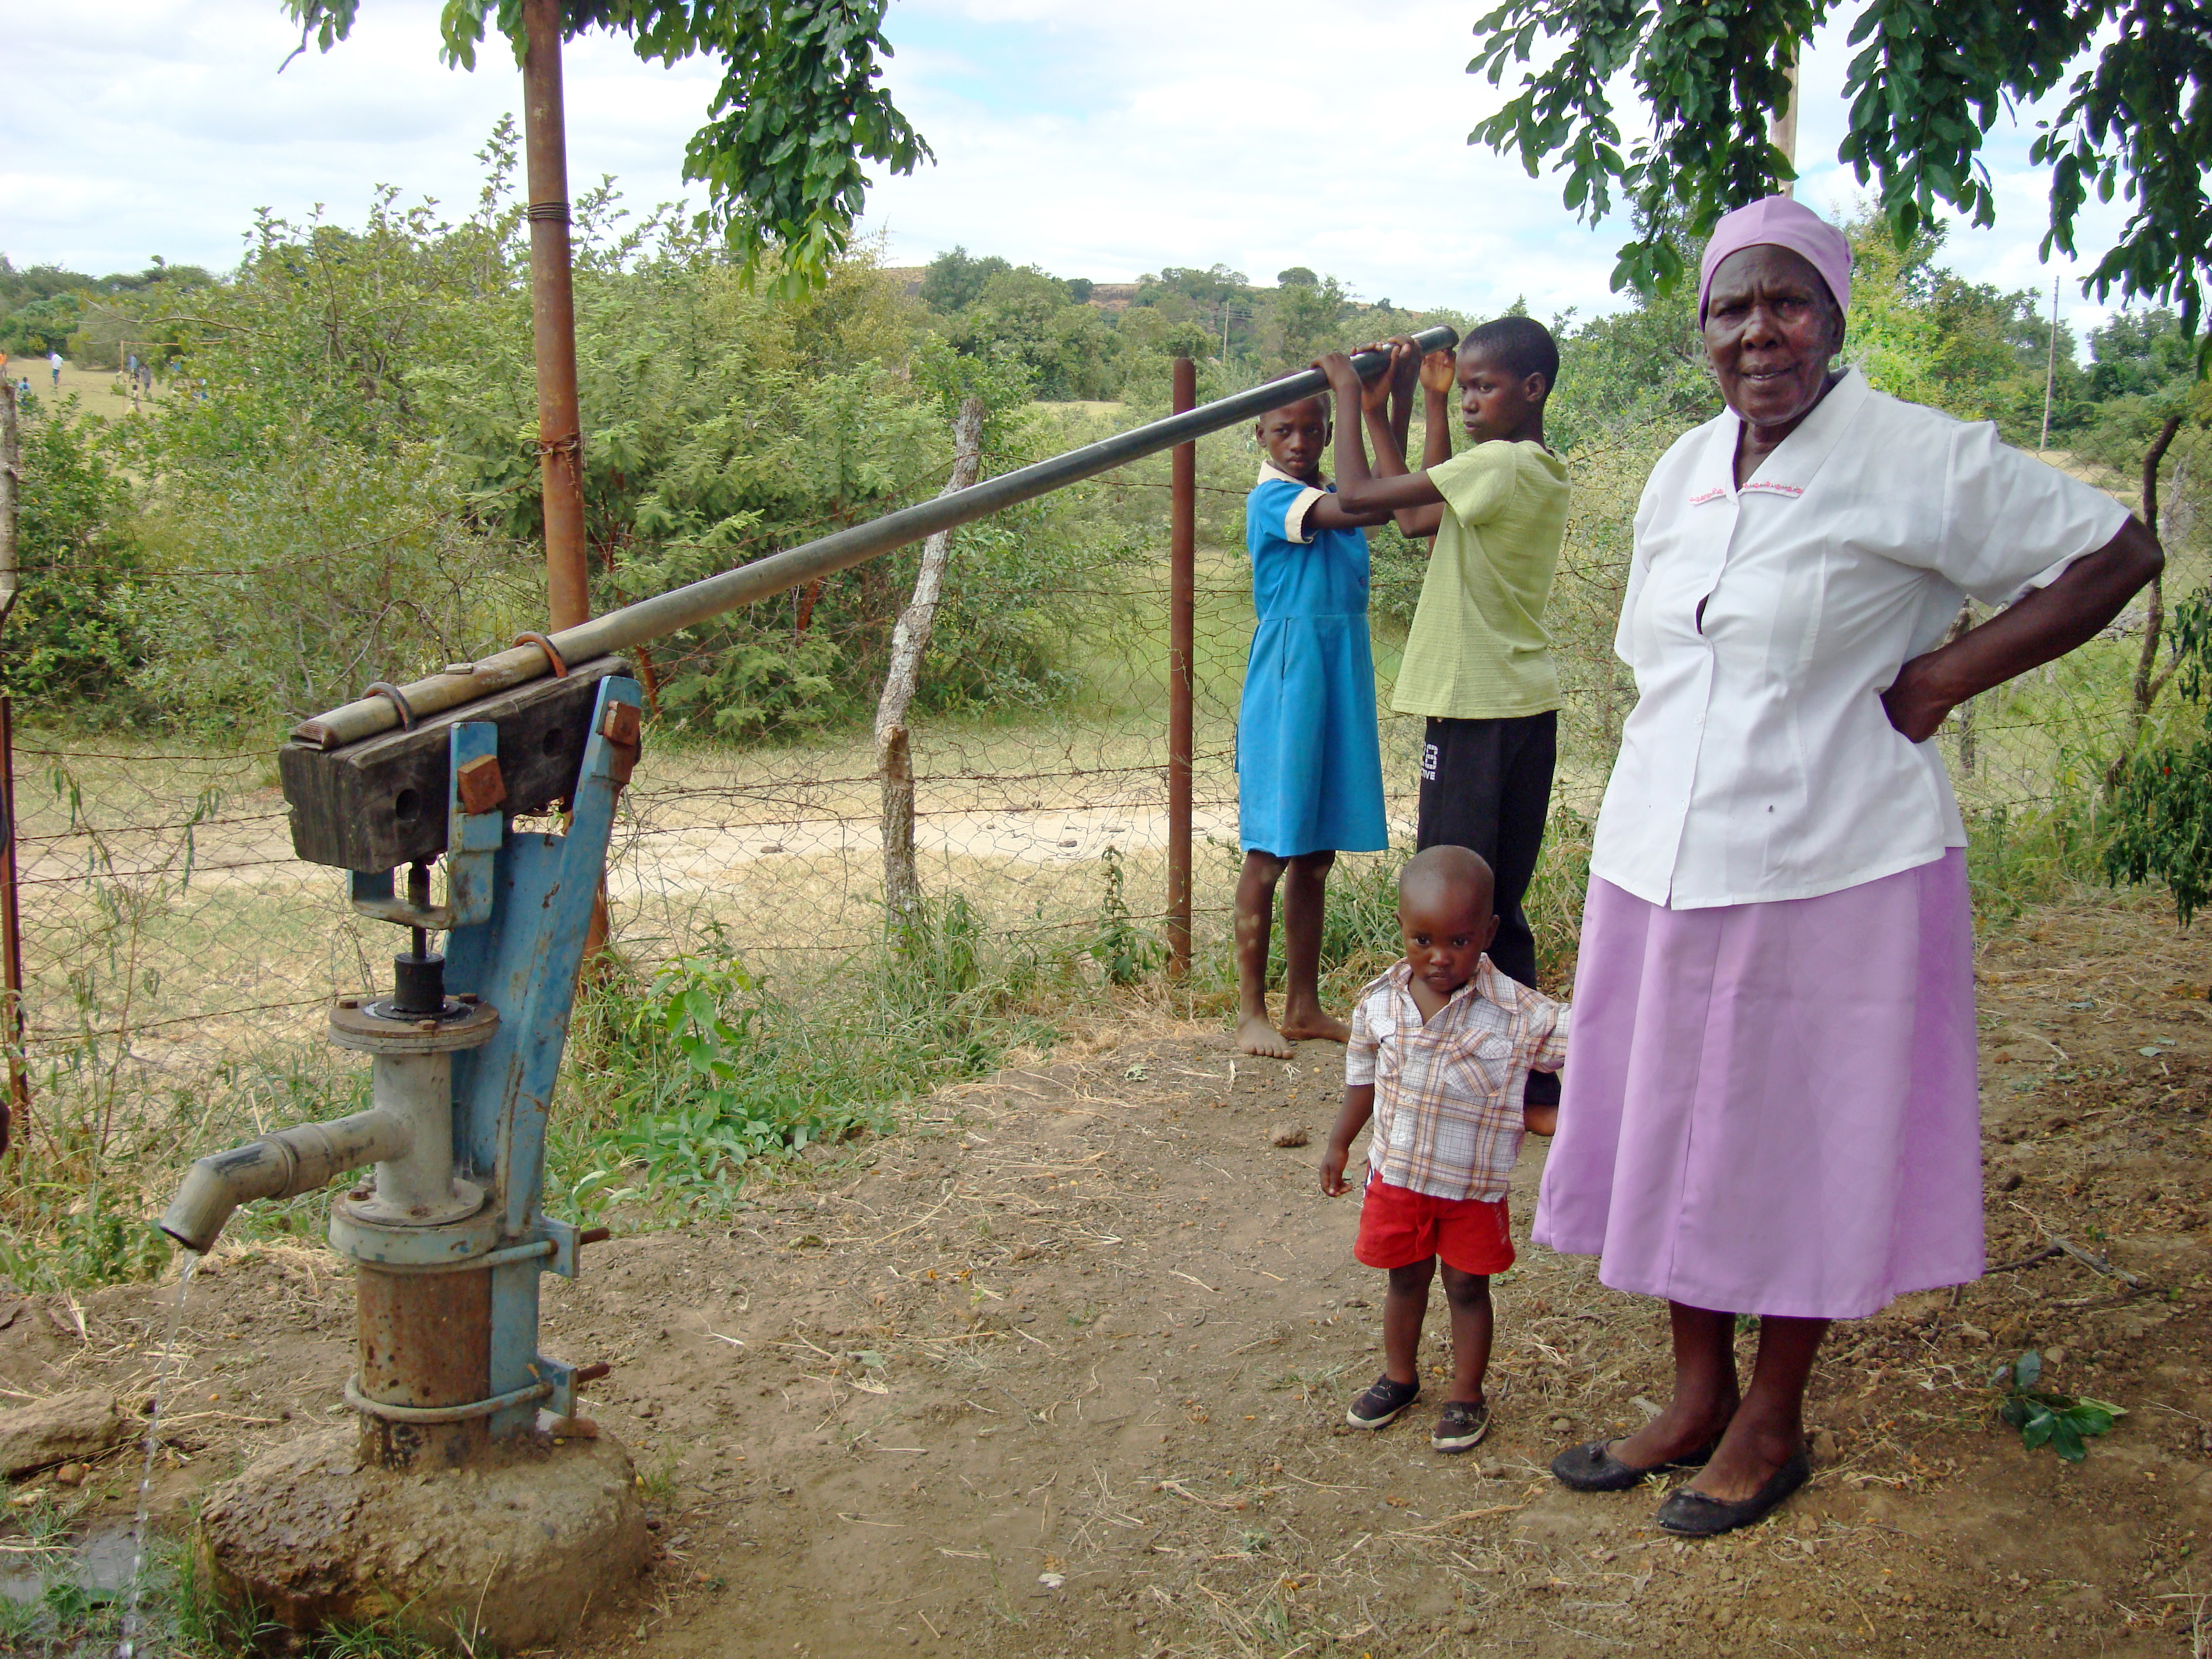 Fru Dziva i Zimbabwe tar hand om barn som blivit föräldralösa på grund av krig och aids. Hon har engagerat sig i arbetet sedan 1989. Finska Missionssällskapet stöder 12 grupper med mor- och farföräldrar som sköter föräldralösa barn i Zimbabwe. "Är det dem vi ska ta av?"